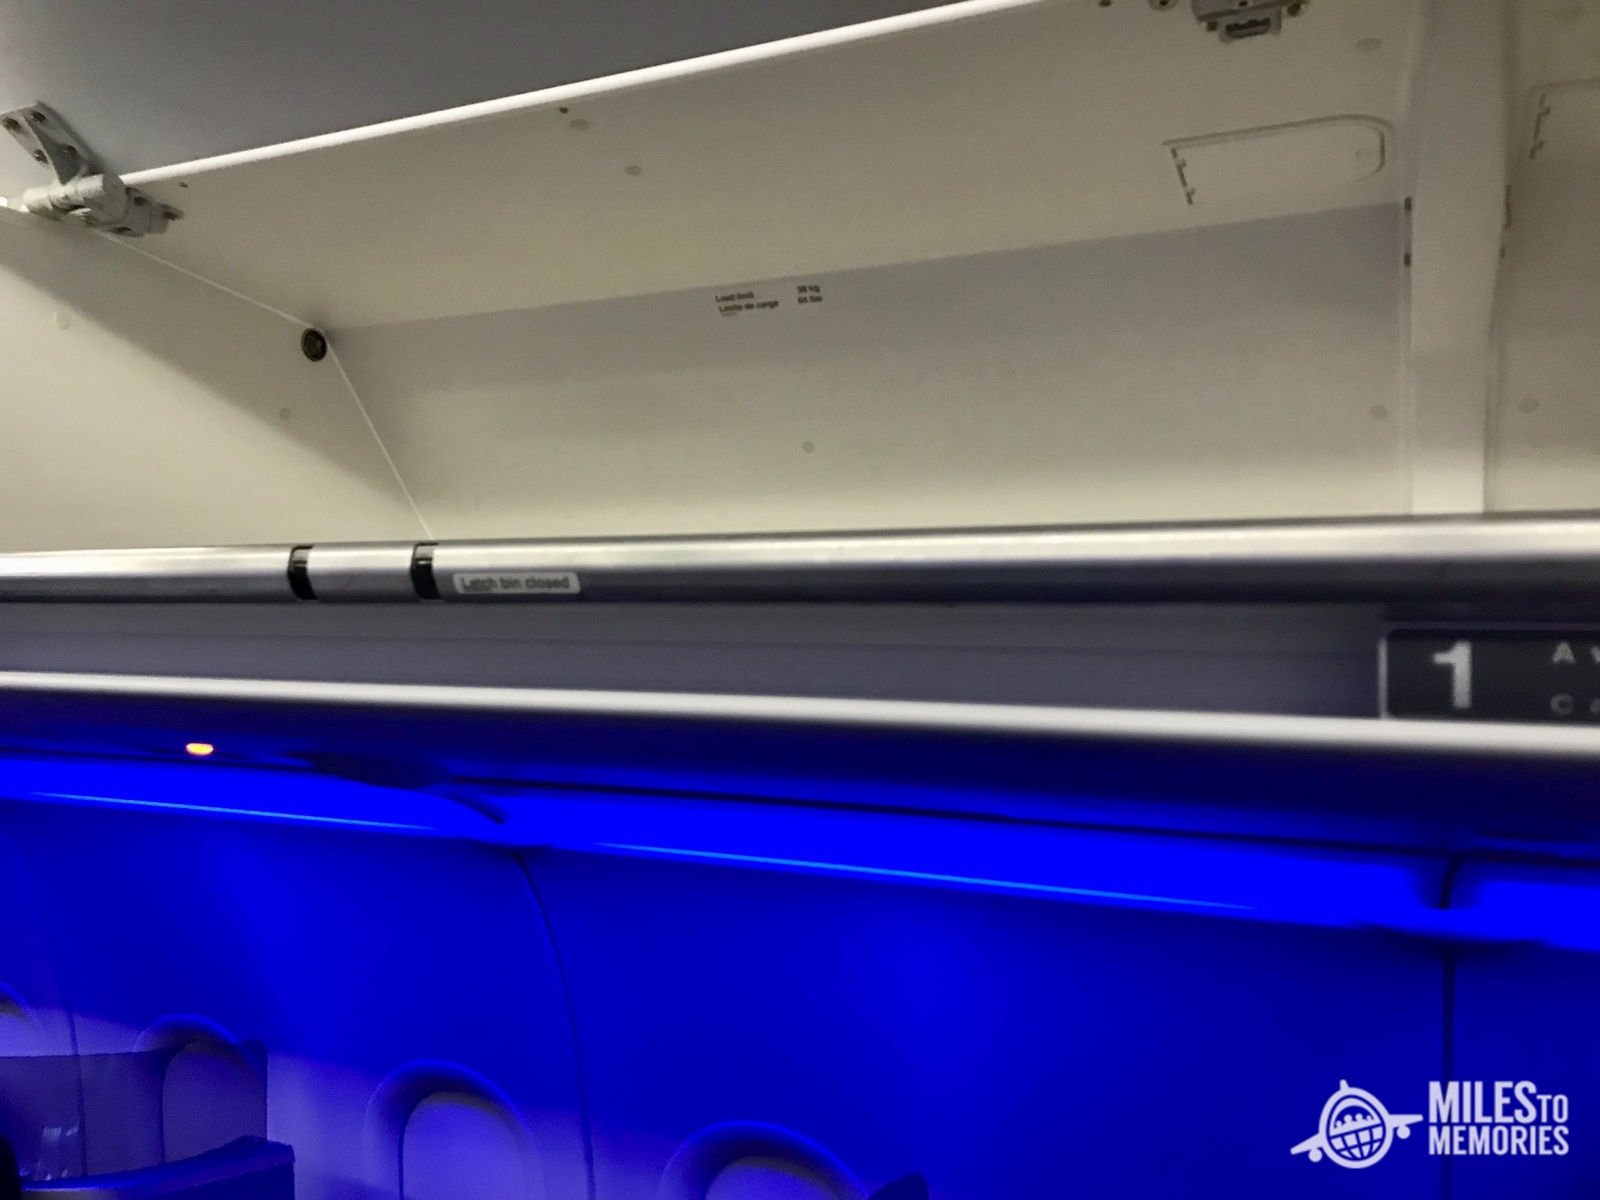 JetBlue Mint Review Airbus A321 (LAX-JFK)